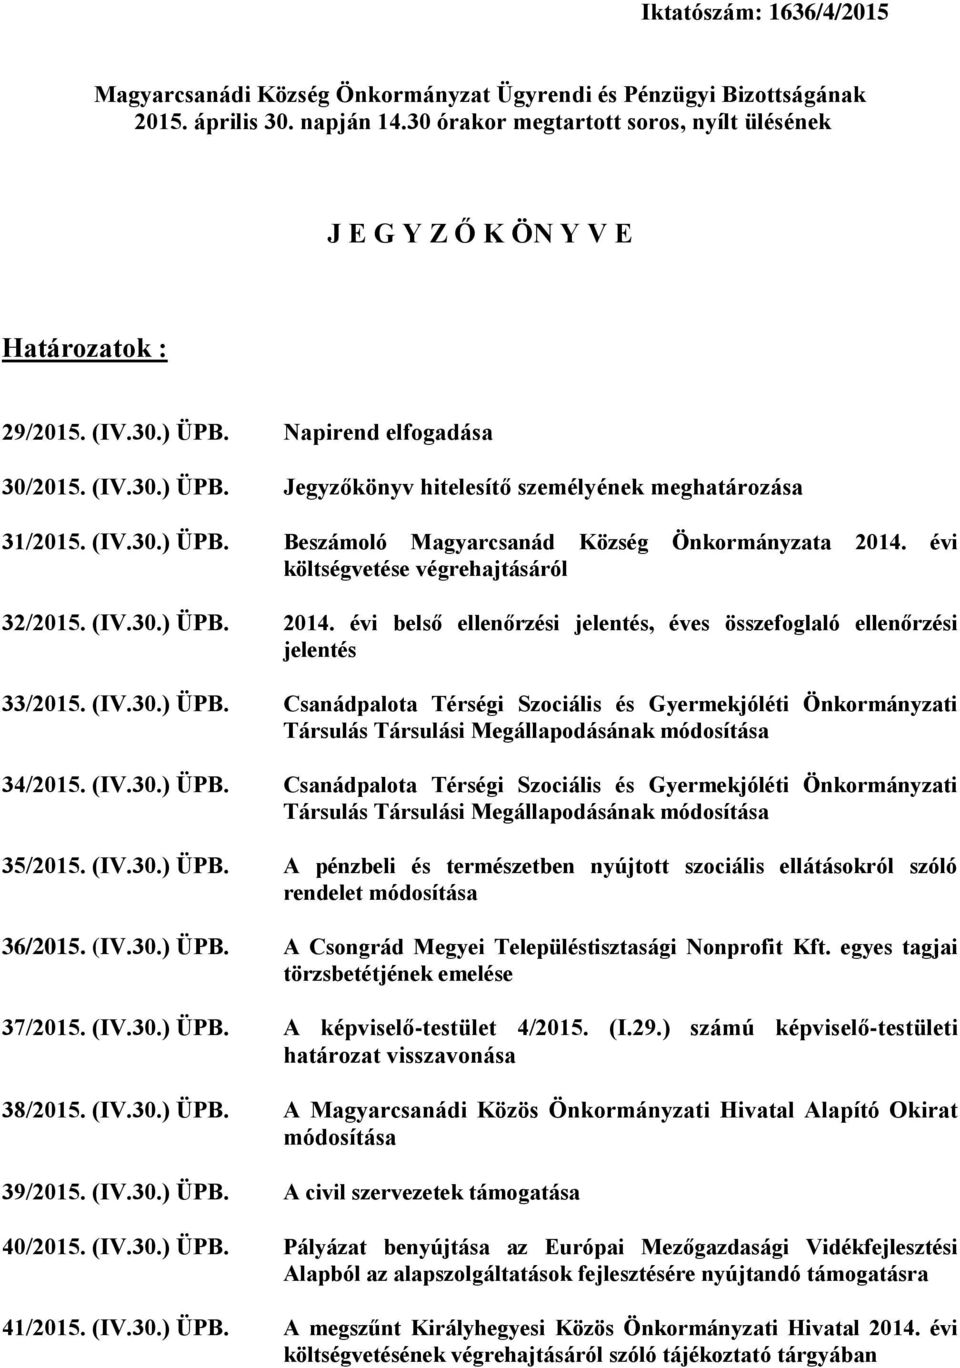 (IV.30.) ÜPB. Beszámoló Magyarcsanád Község Önkormányzata 2014. évi költségvetése végrehajtásáról 32/2015. (IV.30.) ÜPB. 2014. évi belső ellenőrzési jelentés, éves összefoglaló ellenőrzési jelentés 33/2015.